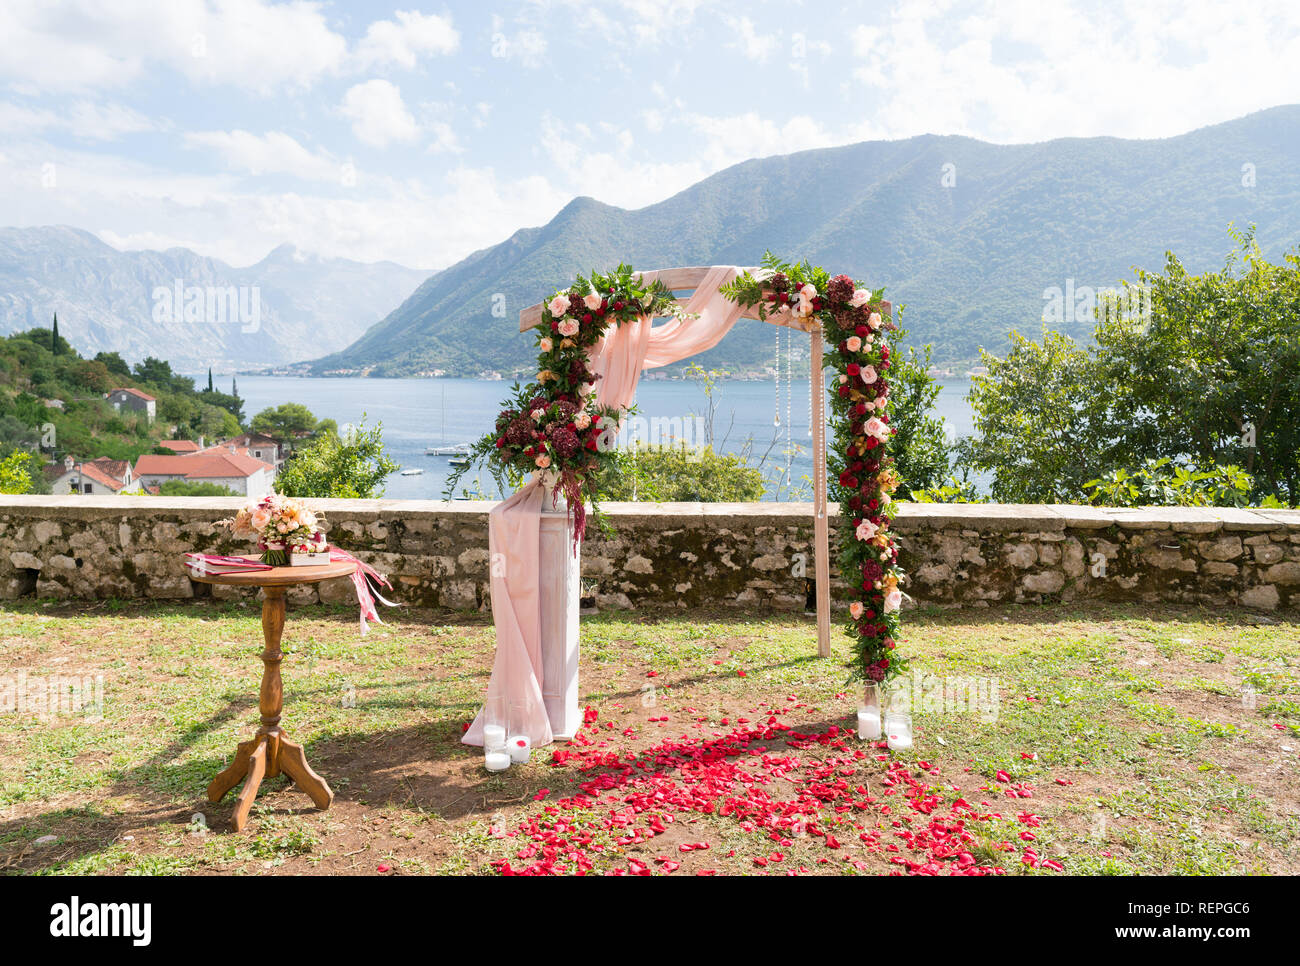 Arch ornée de fleurs fraîches pour une cérémonie de mariage Banque D'Images